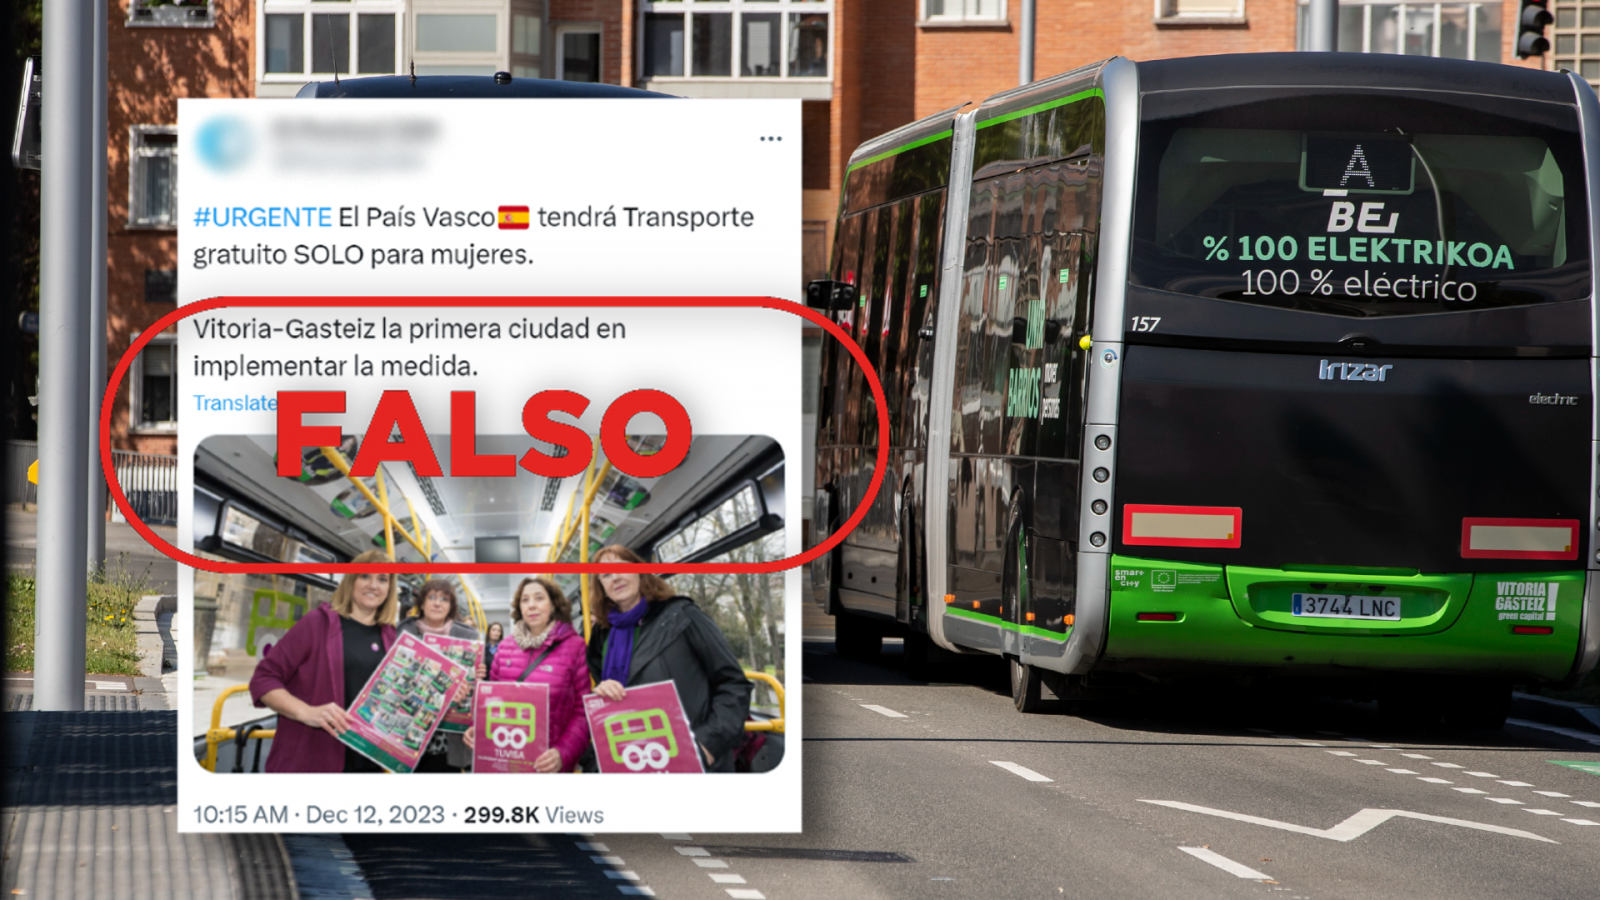 Transporte público gratuito: es falso que el País Vasco haya anunciado esta medida solo para mujeres, con el sello Falso en rojo de VerificaRTVE